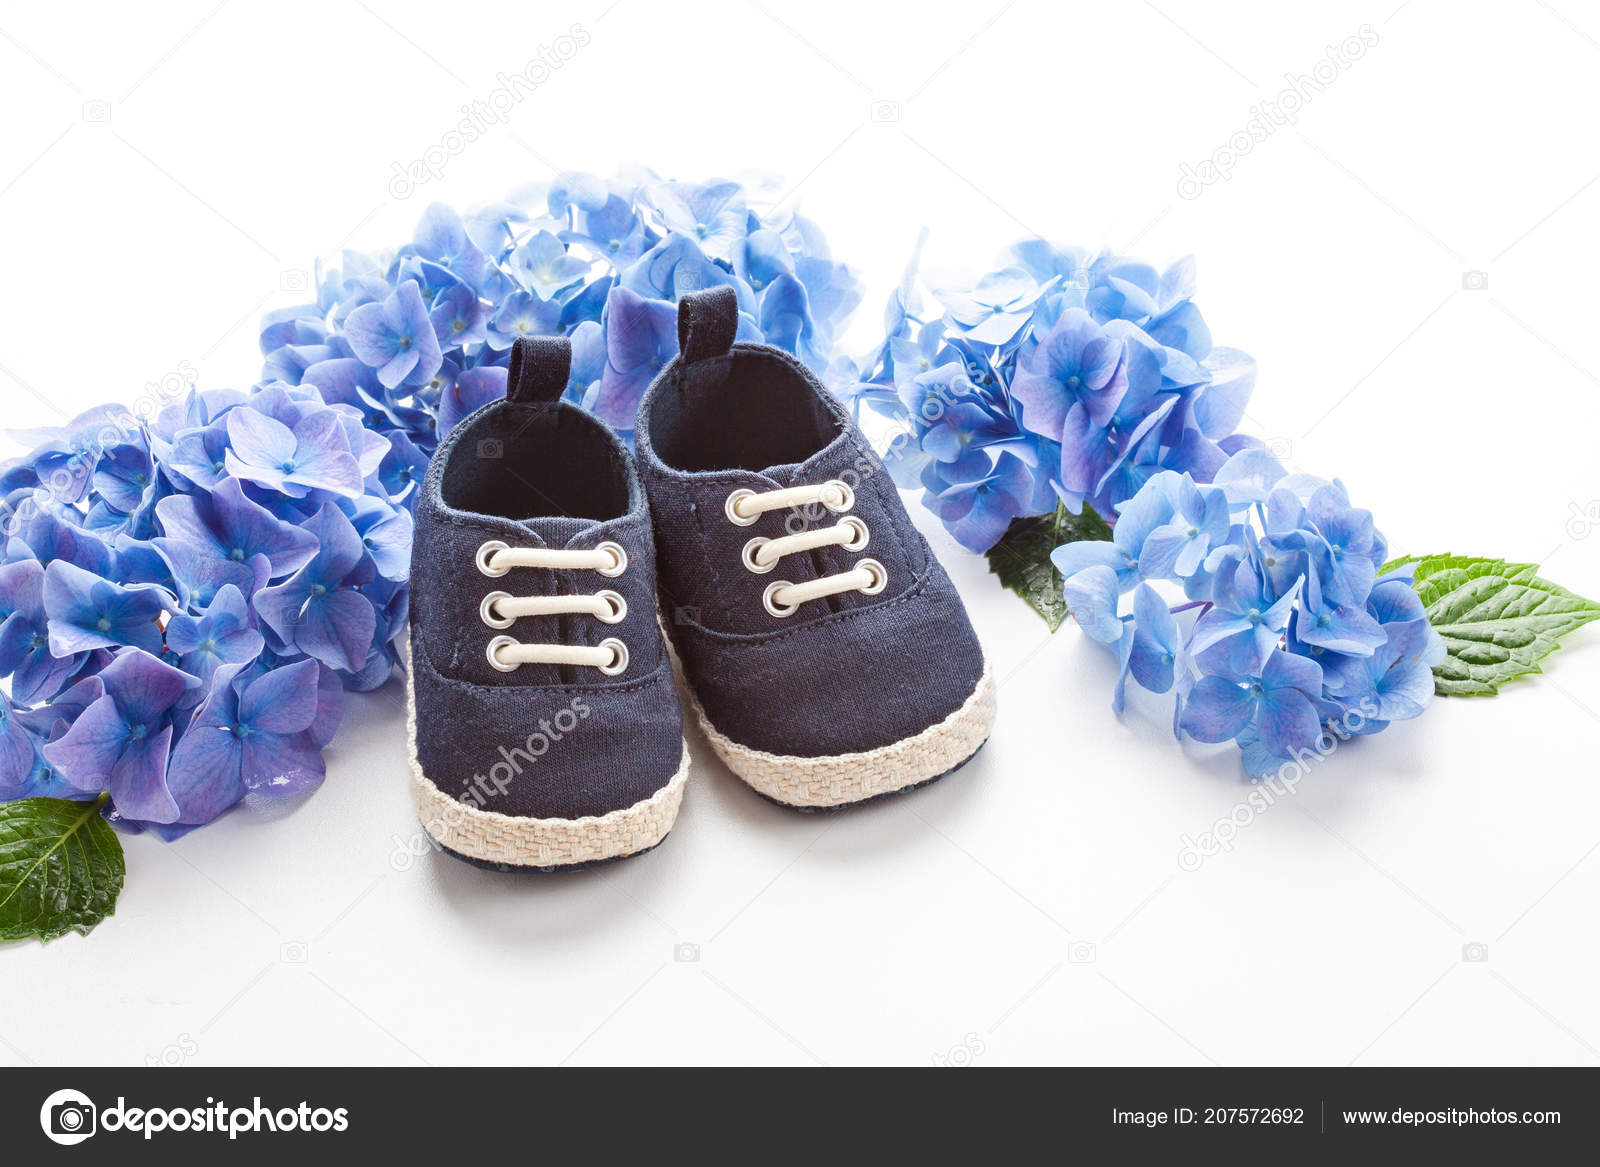 cute infant boy shoes